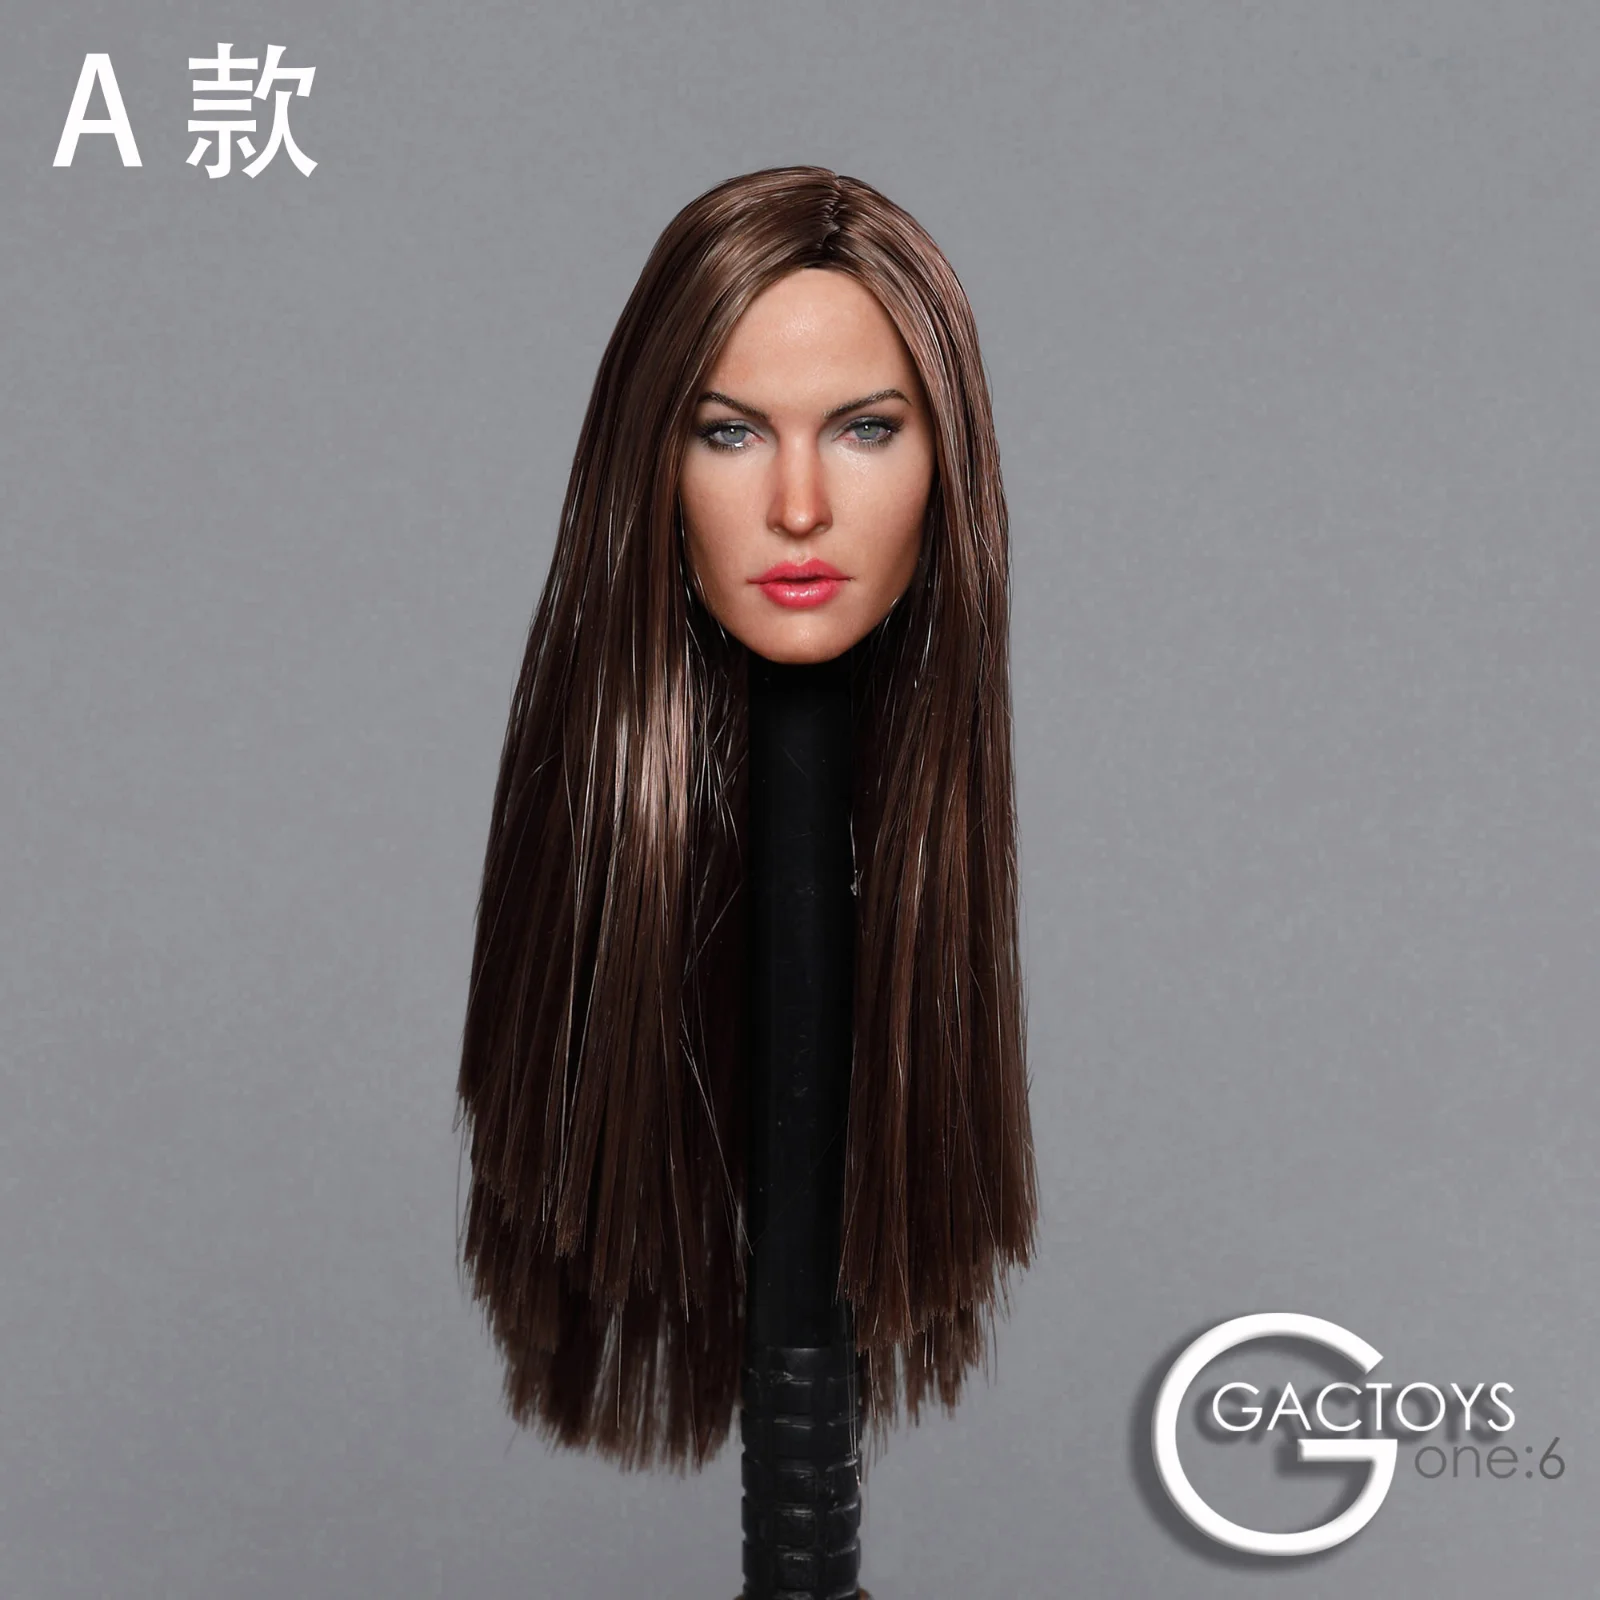 GACTOYS 1//6 Female Girl Head Sculpt Model GC025C w Expression F 12/" Pale Figure